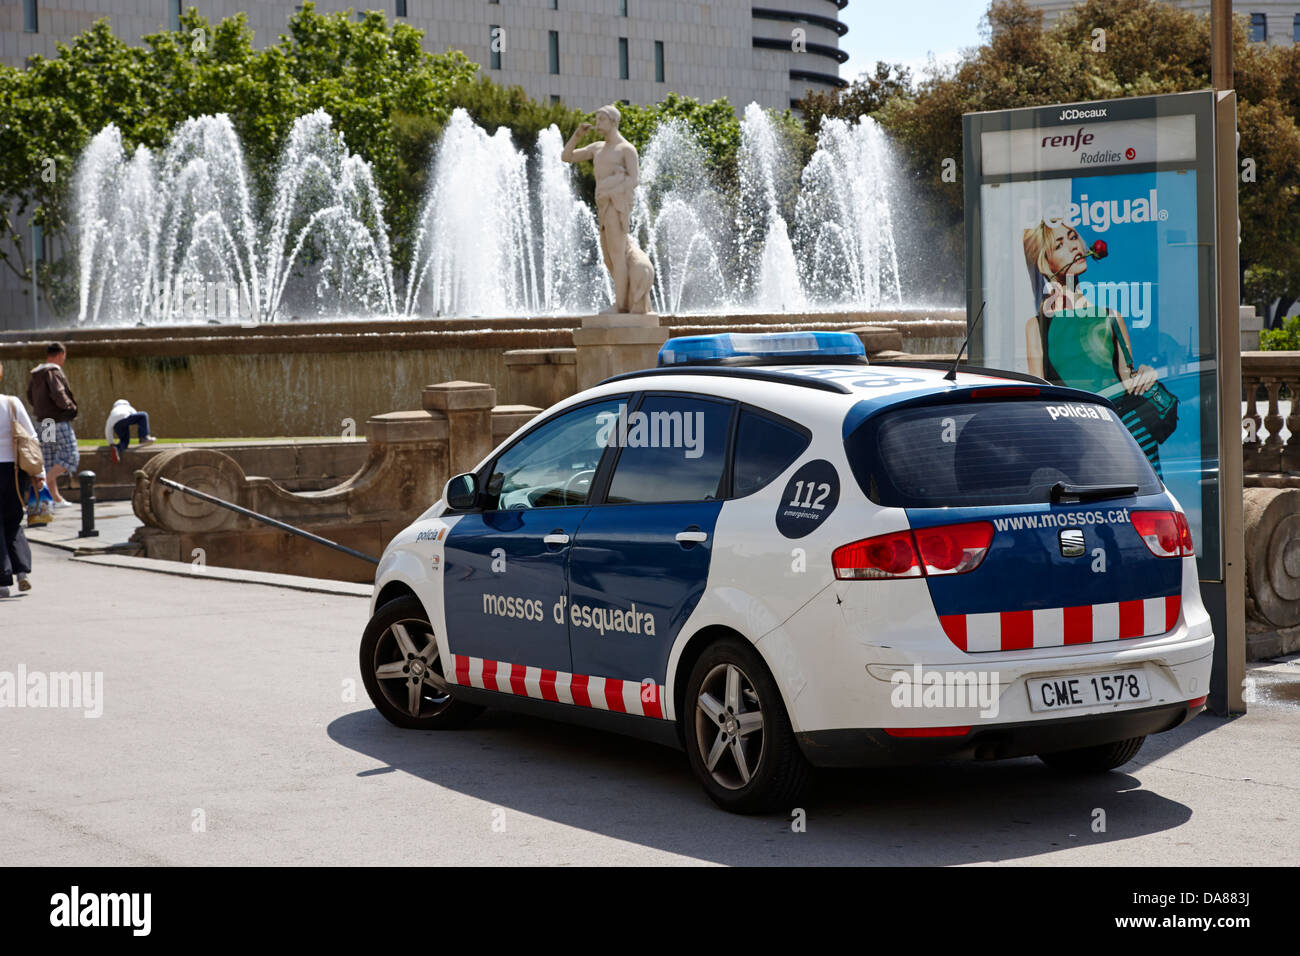 Catalano forza di polizia mossos d'esquadra auto di pattuglia in plaça catalunya Barcellona Catalonia Spagna Foto Stock